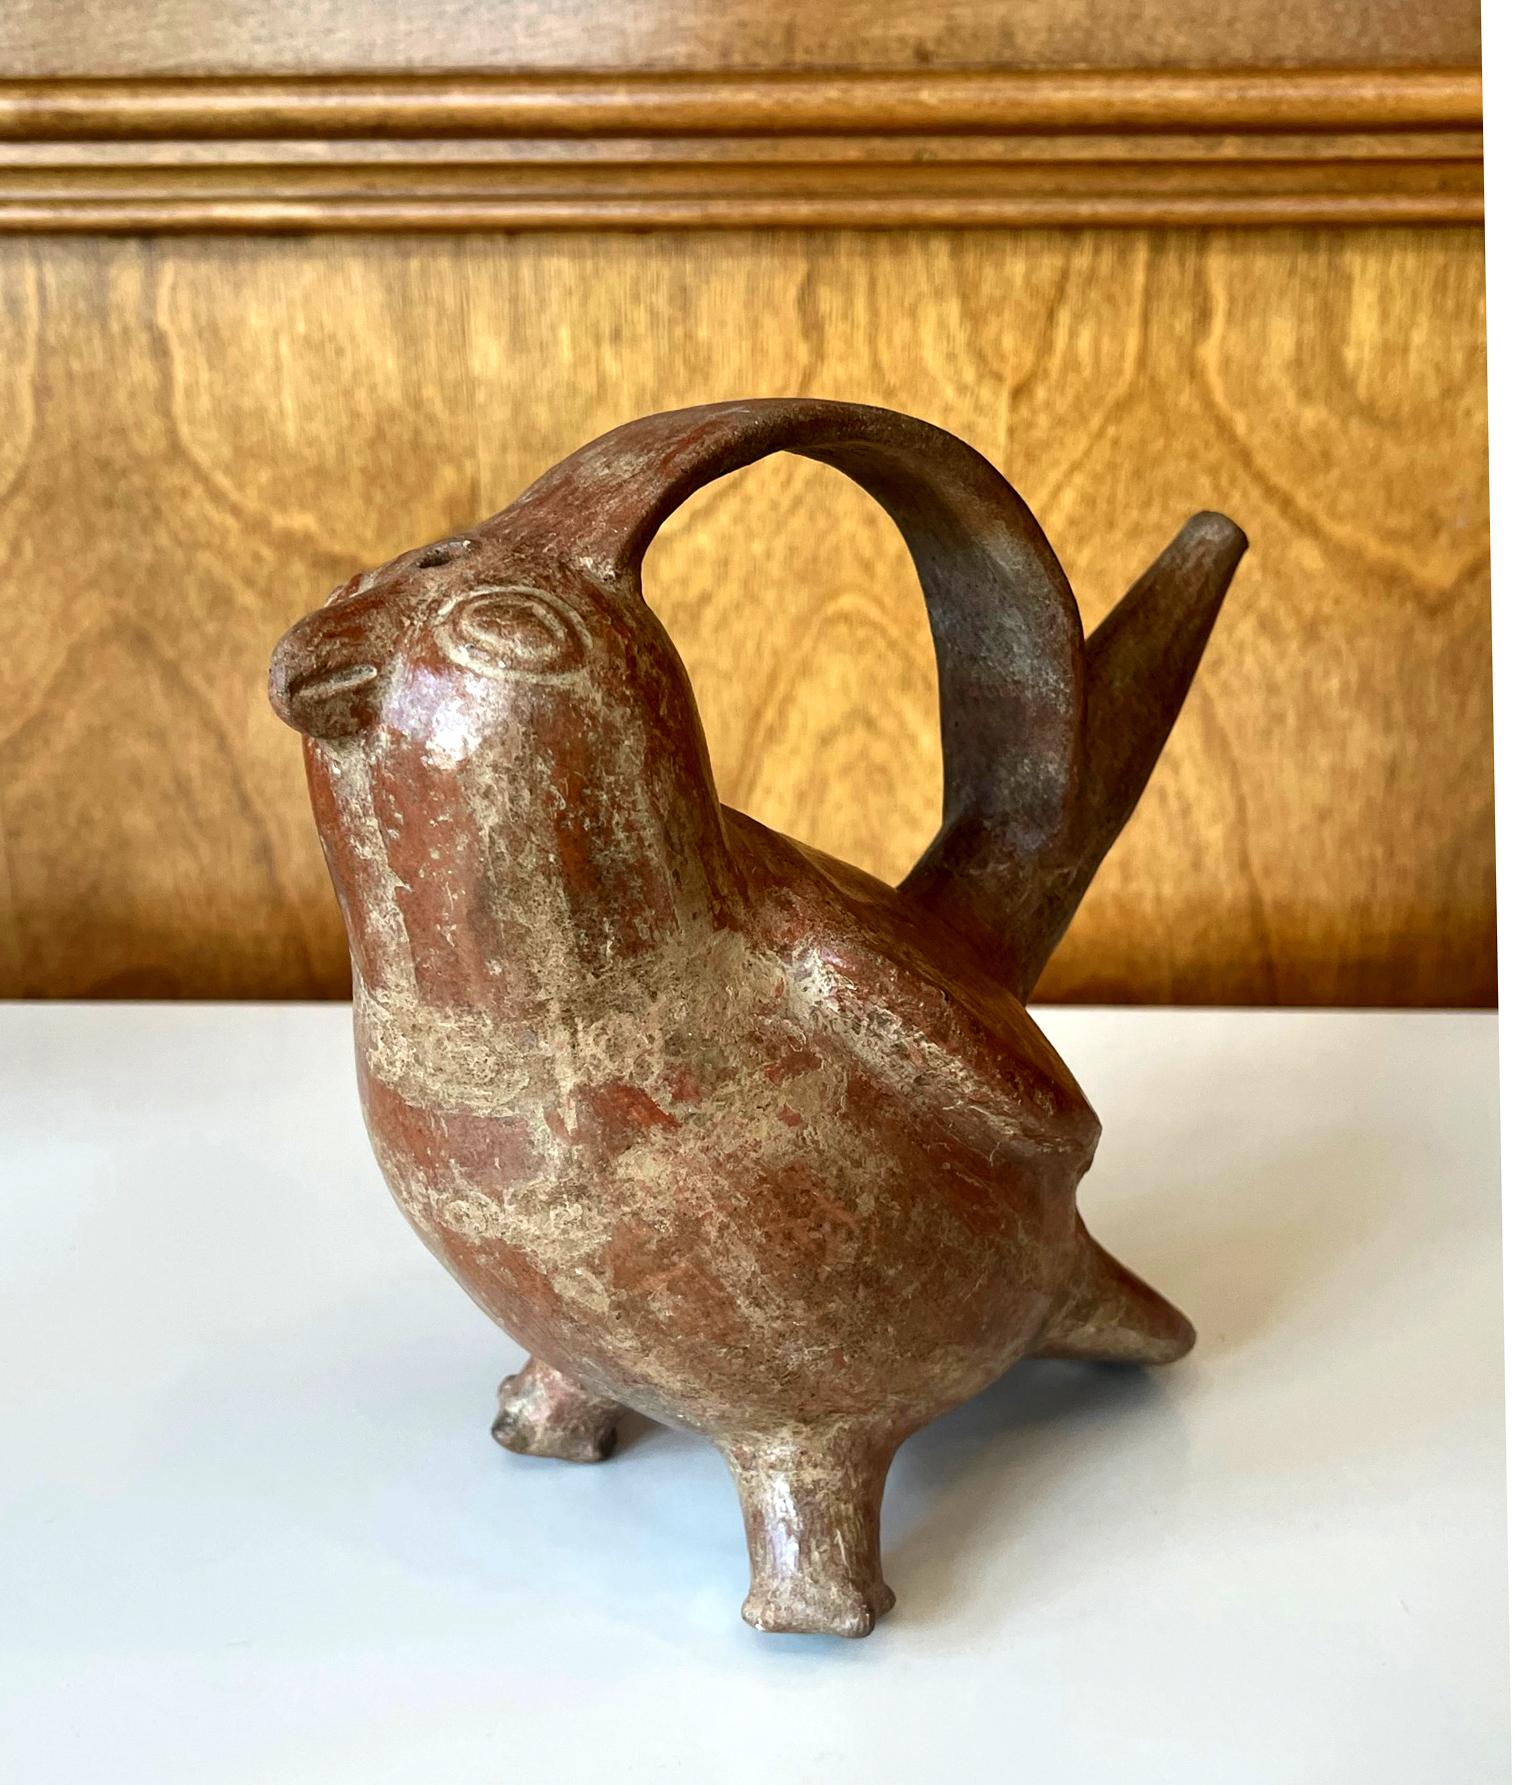 Pre-Columbianische Keramikflasche in Form eines Vogels von der Nordküste Perus, wahrscheinlich aus der Sican-Kultur, die vom 8. bis 14. Jahrhundert blühte. Das Vogelgefäß hat einen hohlen Körper mit einem langen Trieb auf dem Rücken, der den Kopf